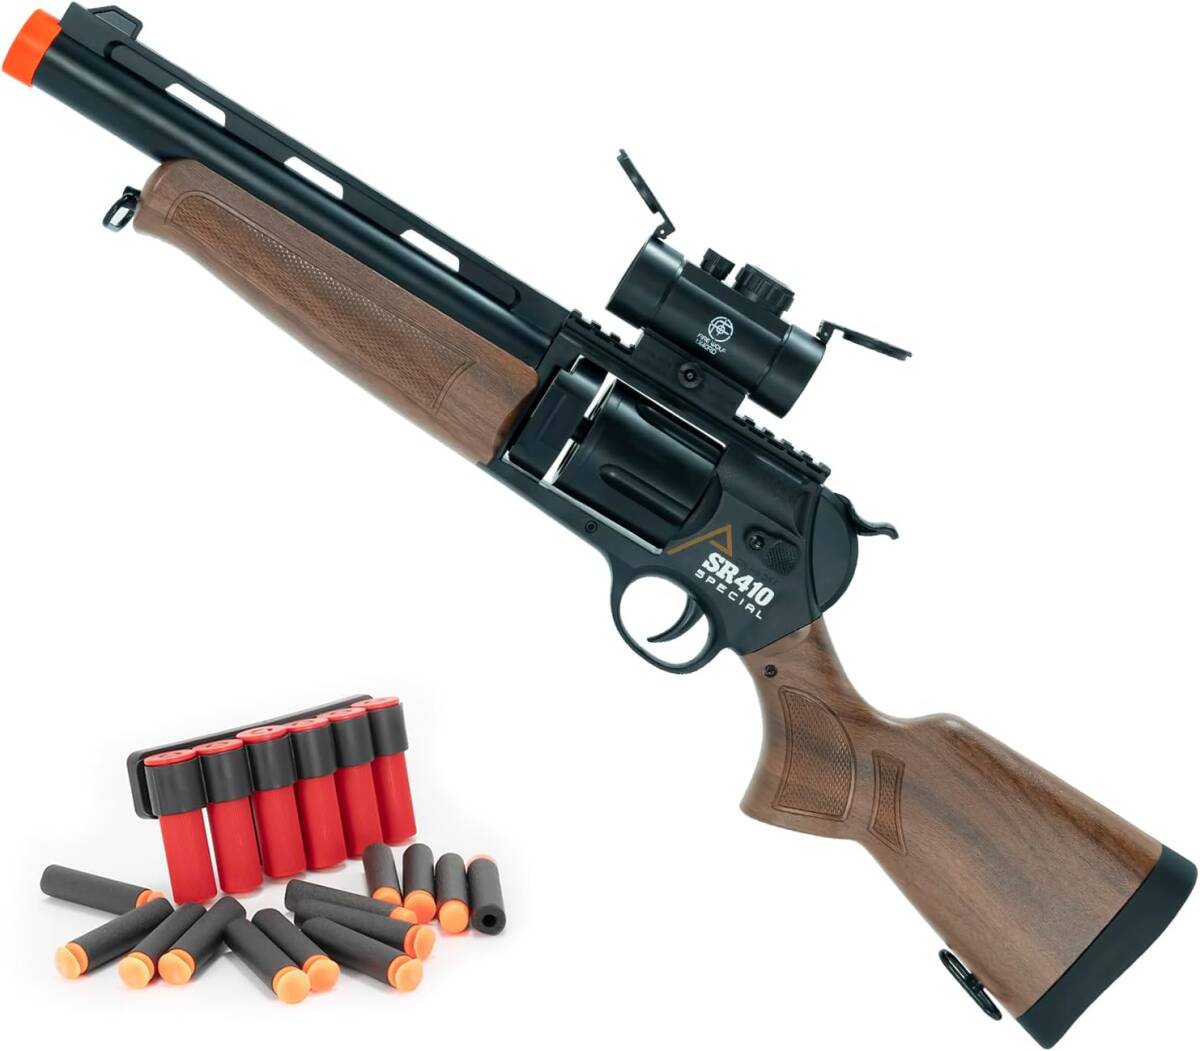 1円 おもちゃ銃 おもちゃの銃 SR410 排莢式 ショットガン トイガン モデルガン スポンジ銃 スポンジ弾 (木目)_画像6